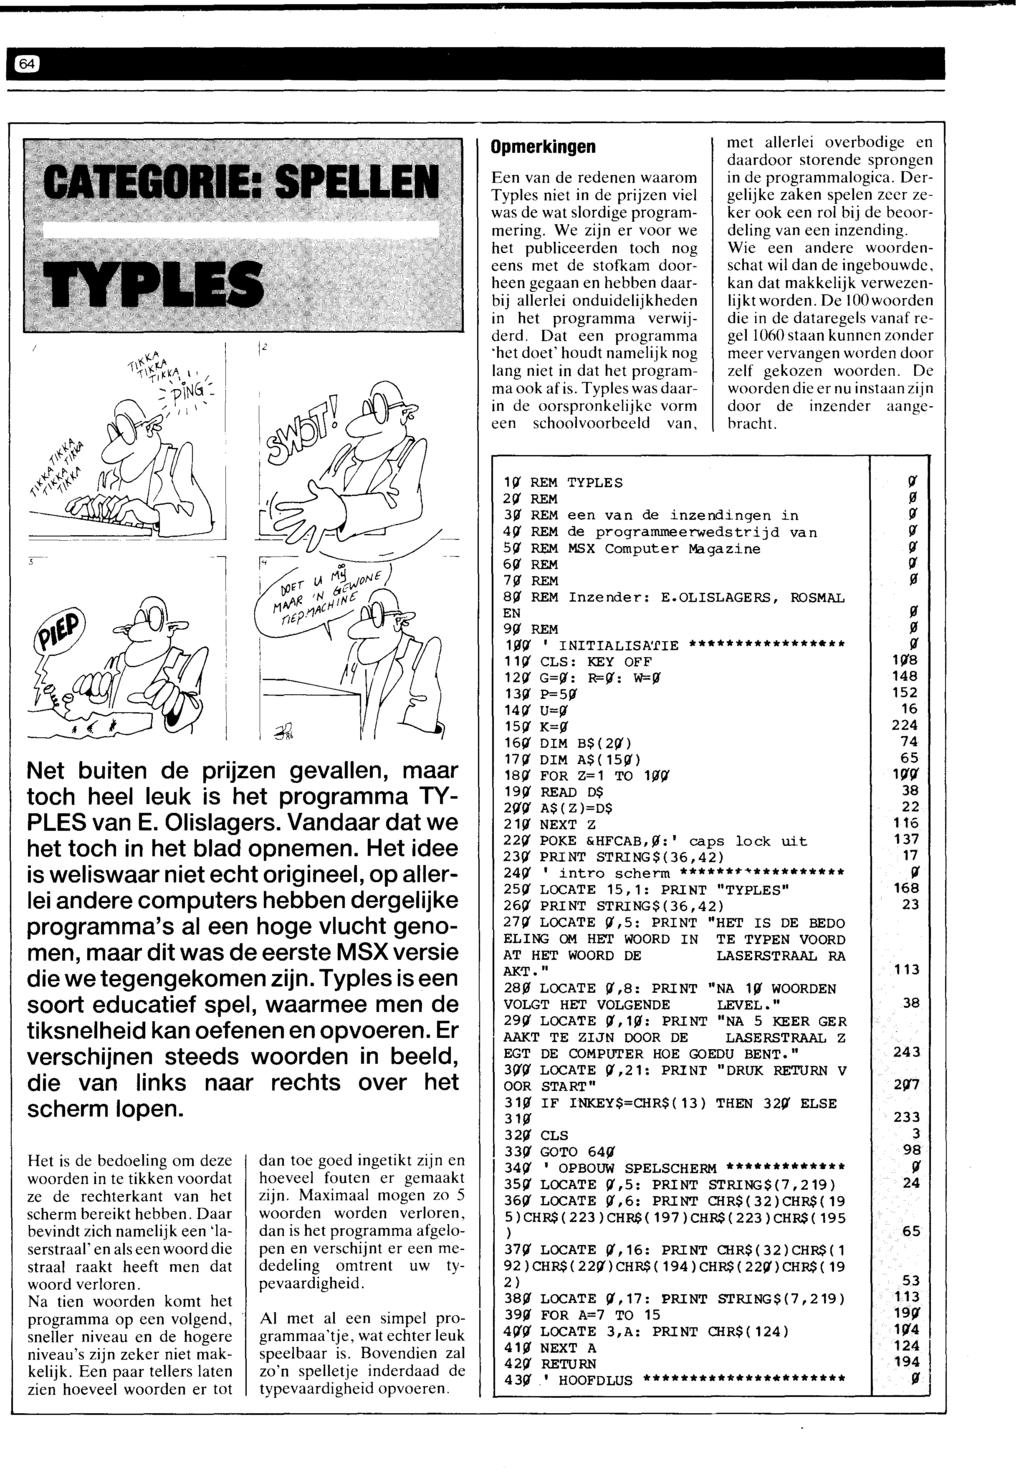 Opmerkingen Een van de redenen waarom Typles niet in de prijzen viel was de wat slordige programmering.